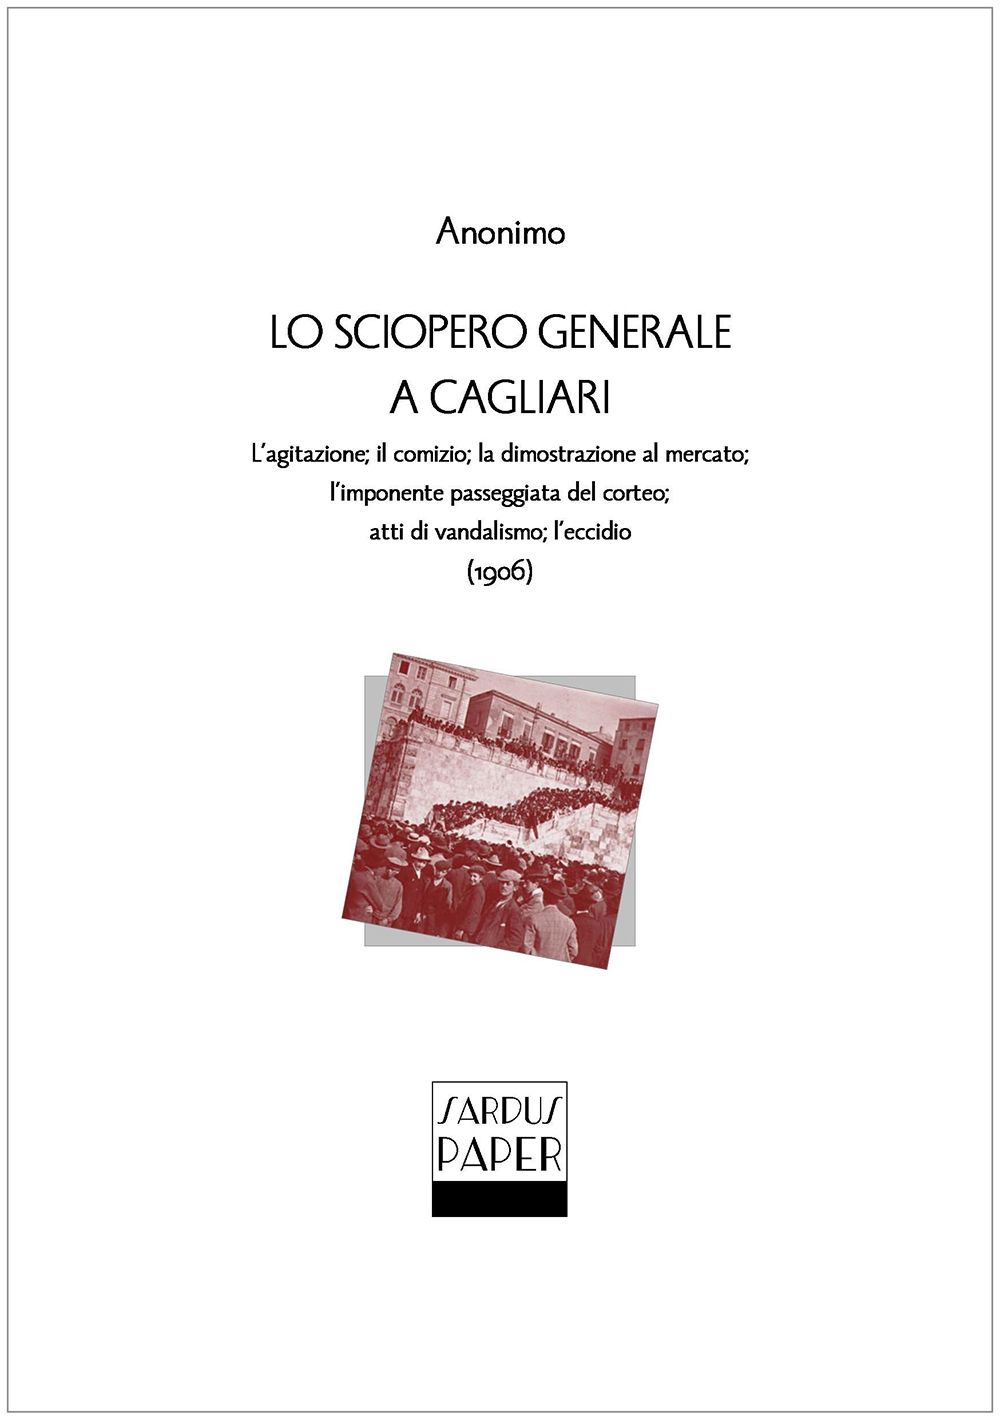 Sardus Paper 04 – Lo sciopero generale a Cagliari